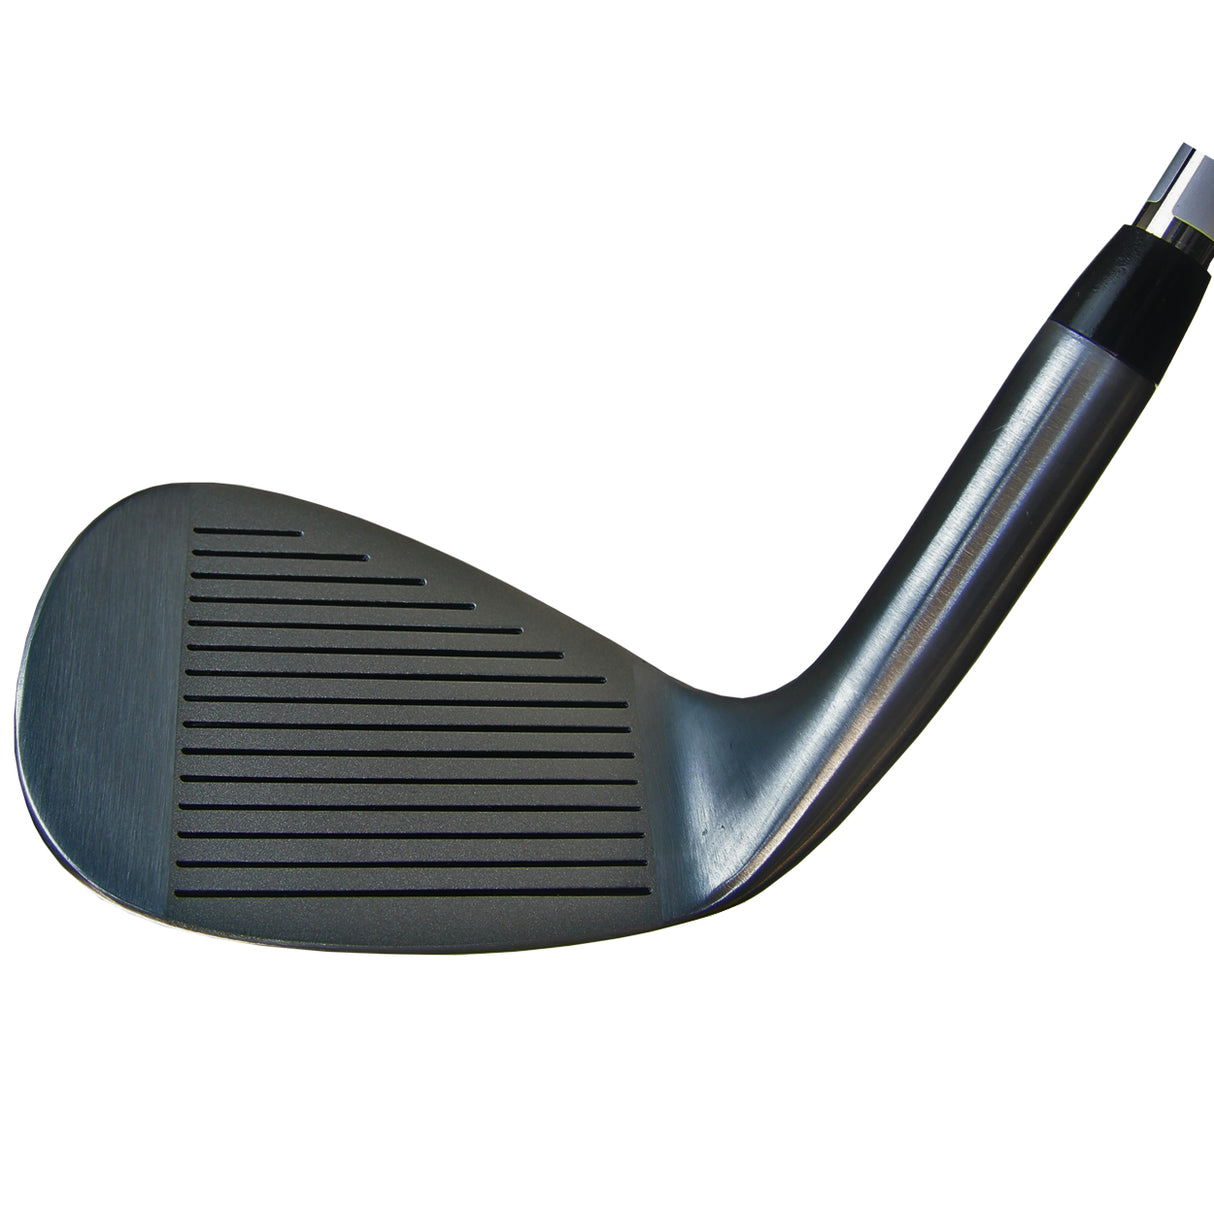 Powerbilt Golf XRT Black Nickel Wedge